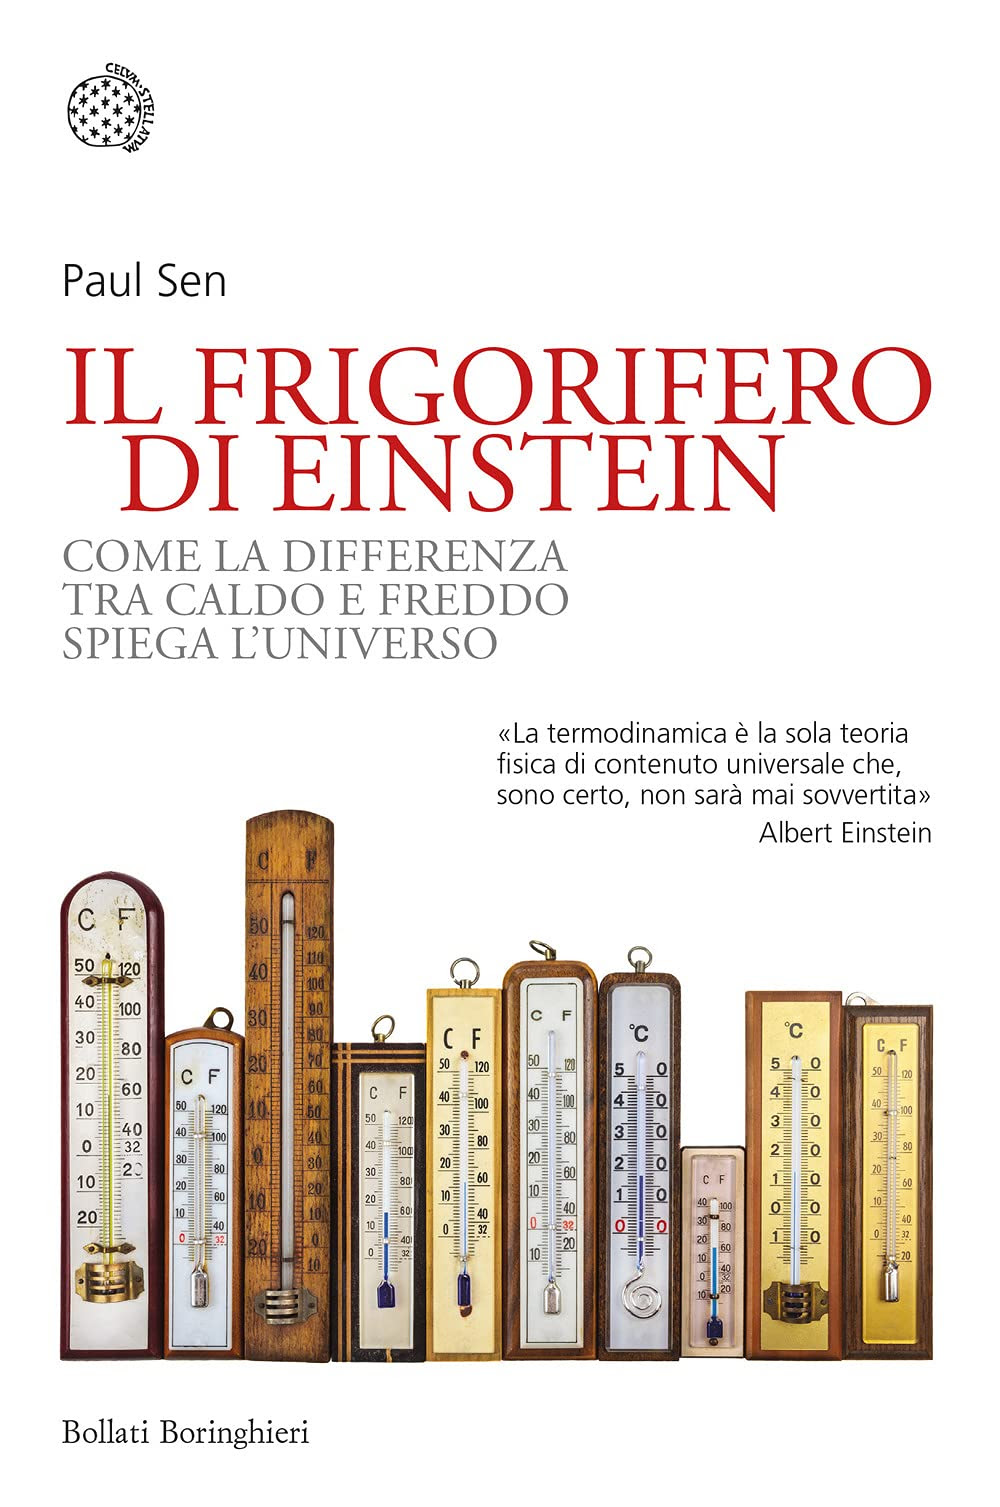 Il frigorifero di Einstein. Come la differenza tra caldo e freddo spiega l'universo in Kindle/PDF/EPUB